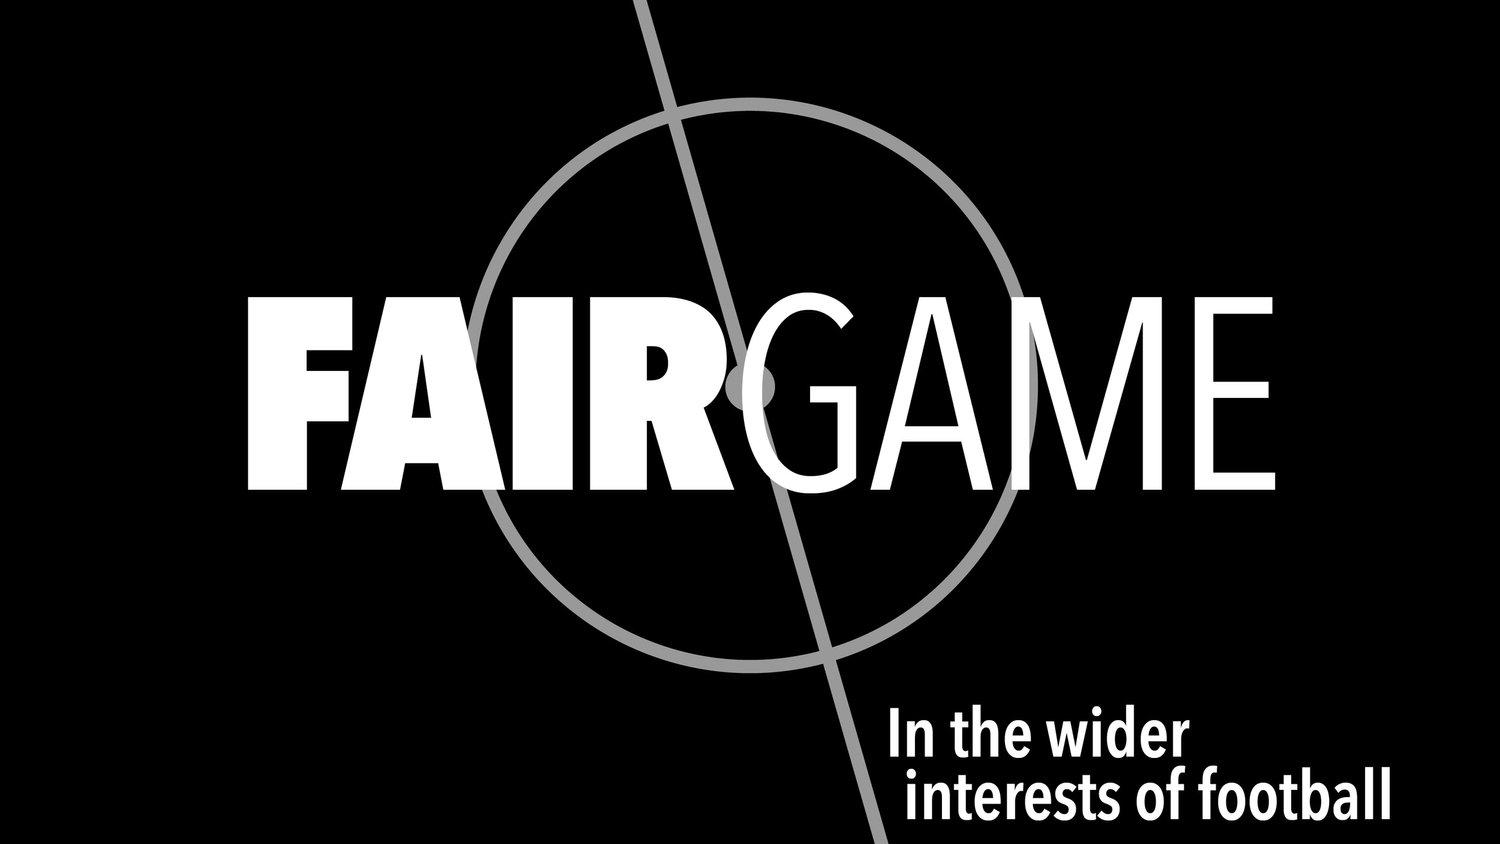 www.fairgameuk.org